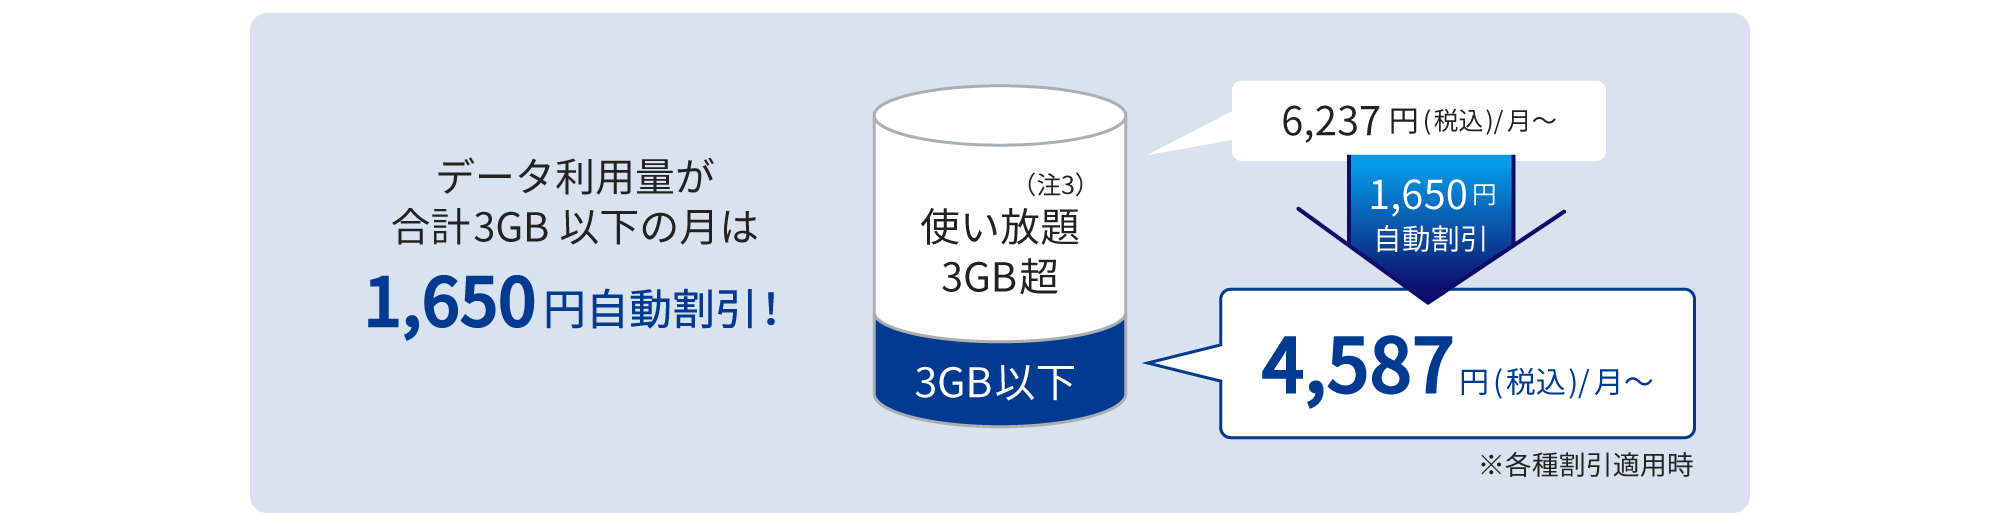 データ利用量が3GB以下の月は1,650円自動割引され、4,587円(税込)/月に！